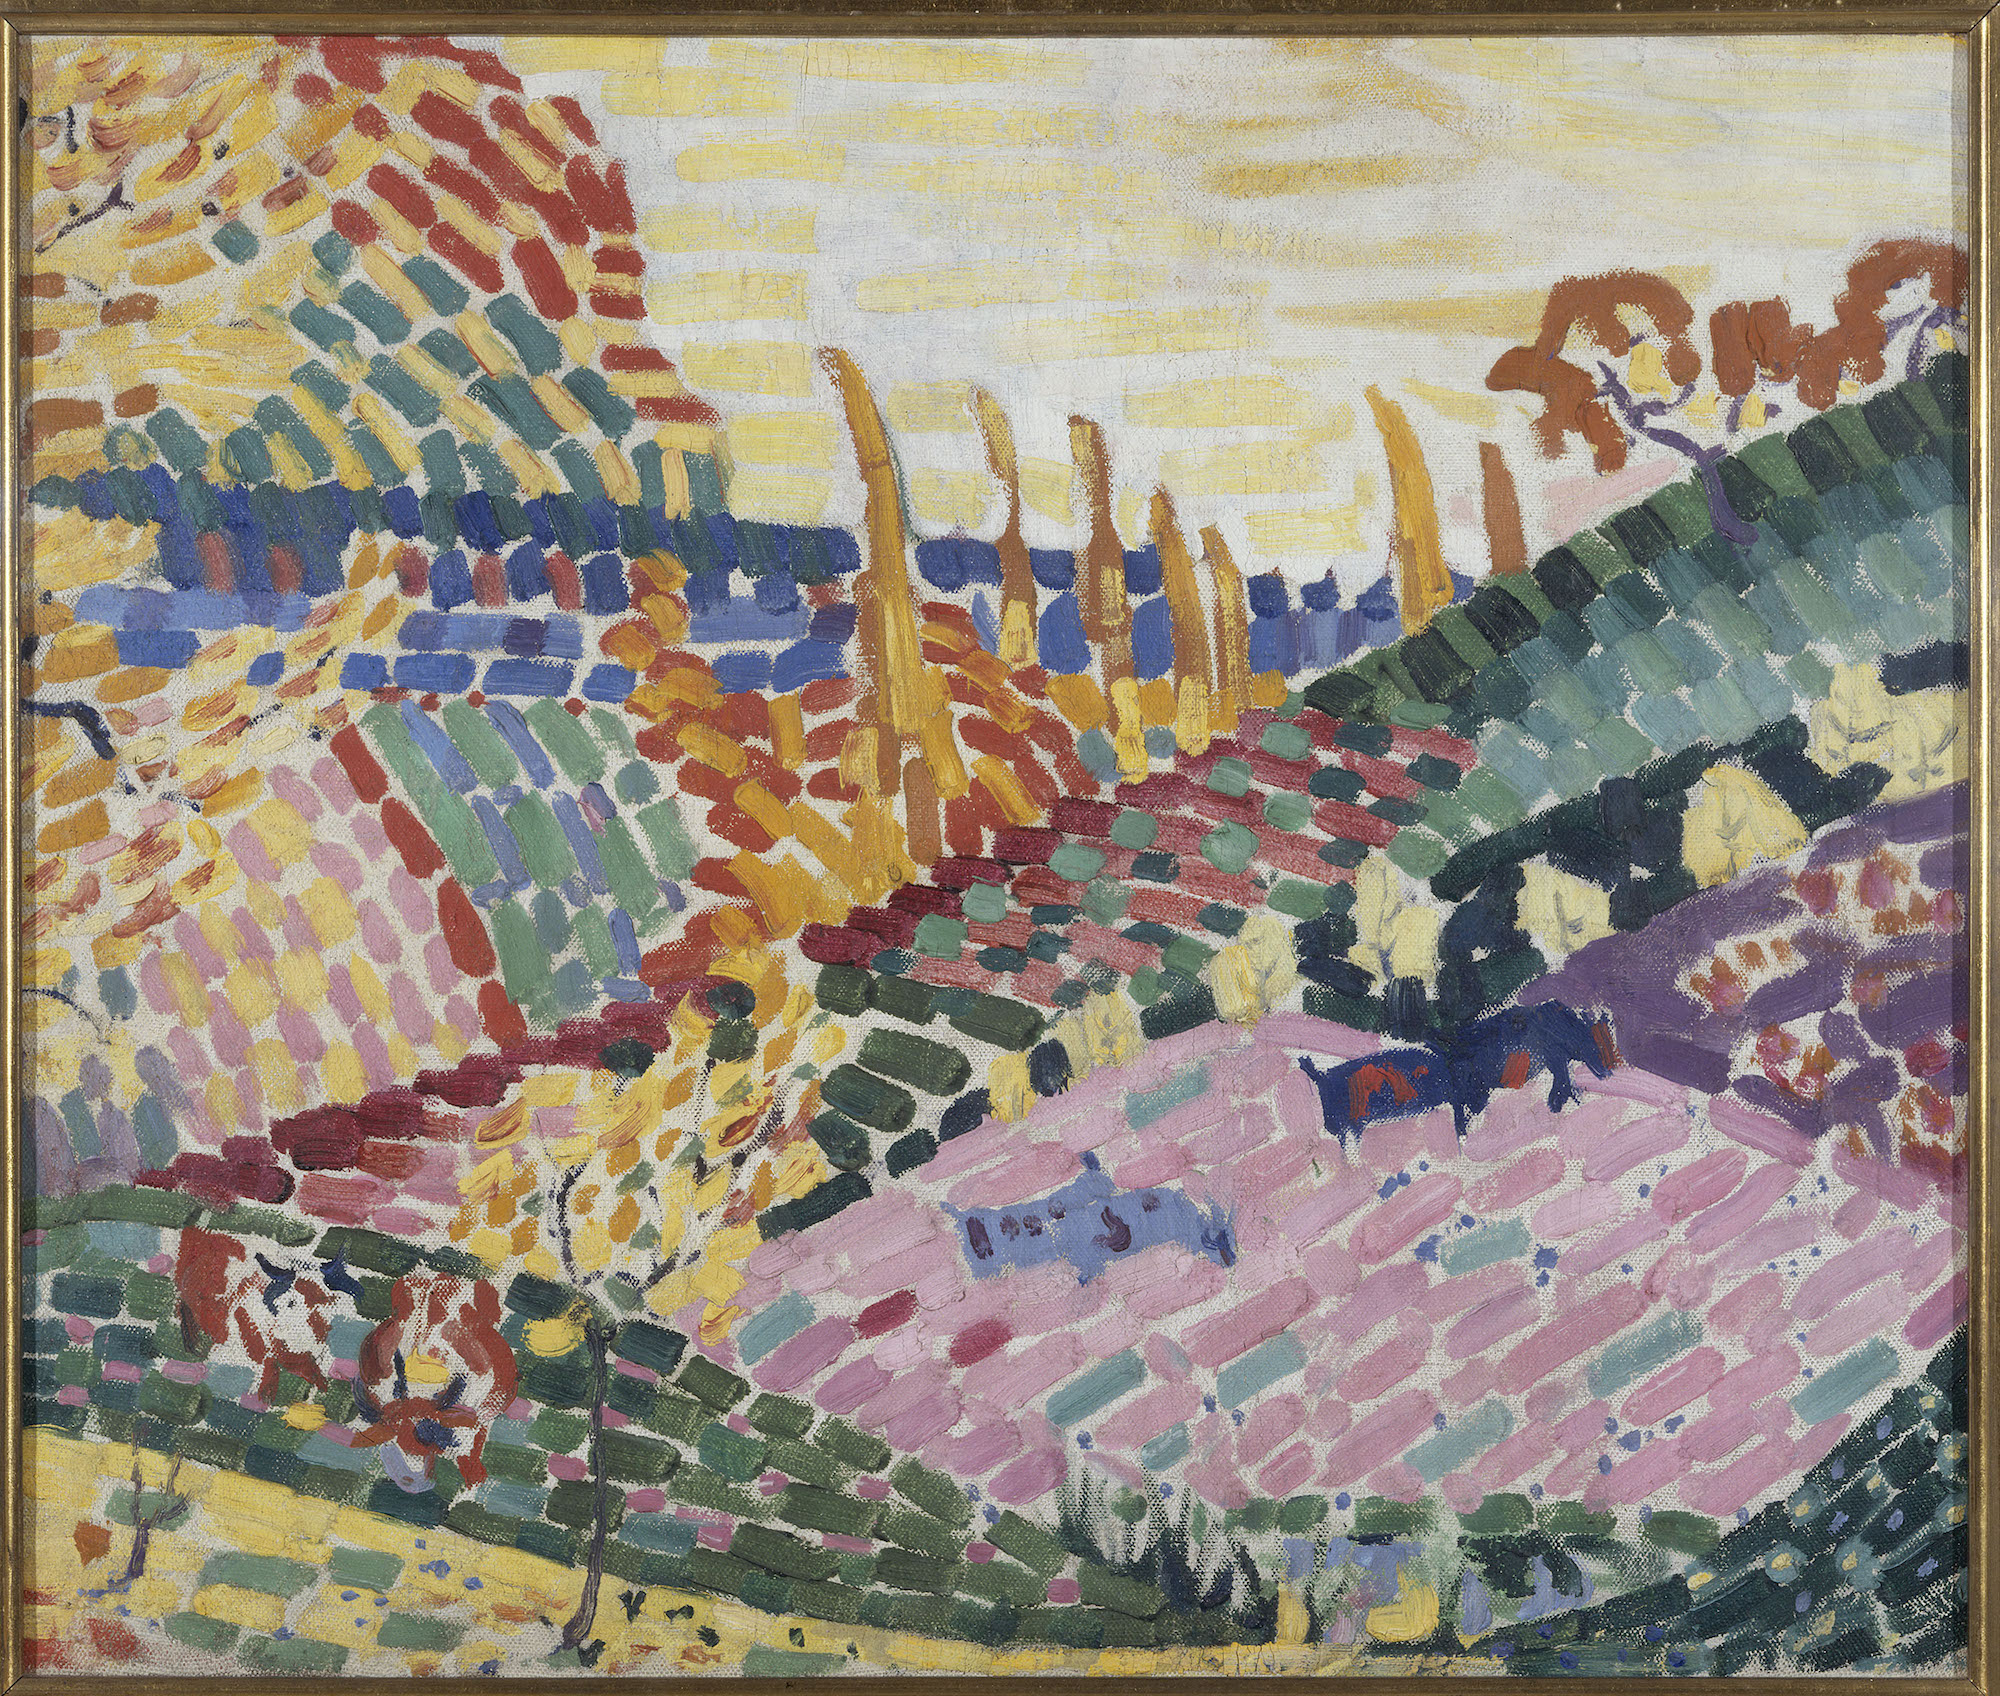 Robert Delaunay (1885-1941), Paysage aux vaches, 1906. Huile sur toile, 50 x 61 cm. Paris Musées / musée d’Art moderne de Paris. Photo service de presse. © Adagp, Paris, 2023